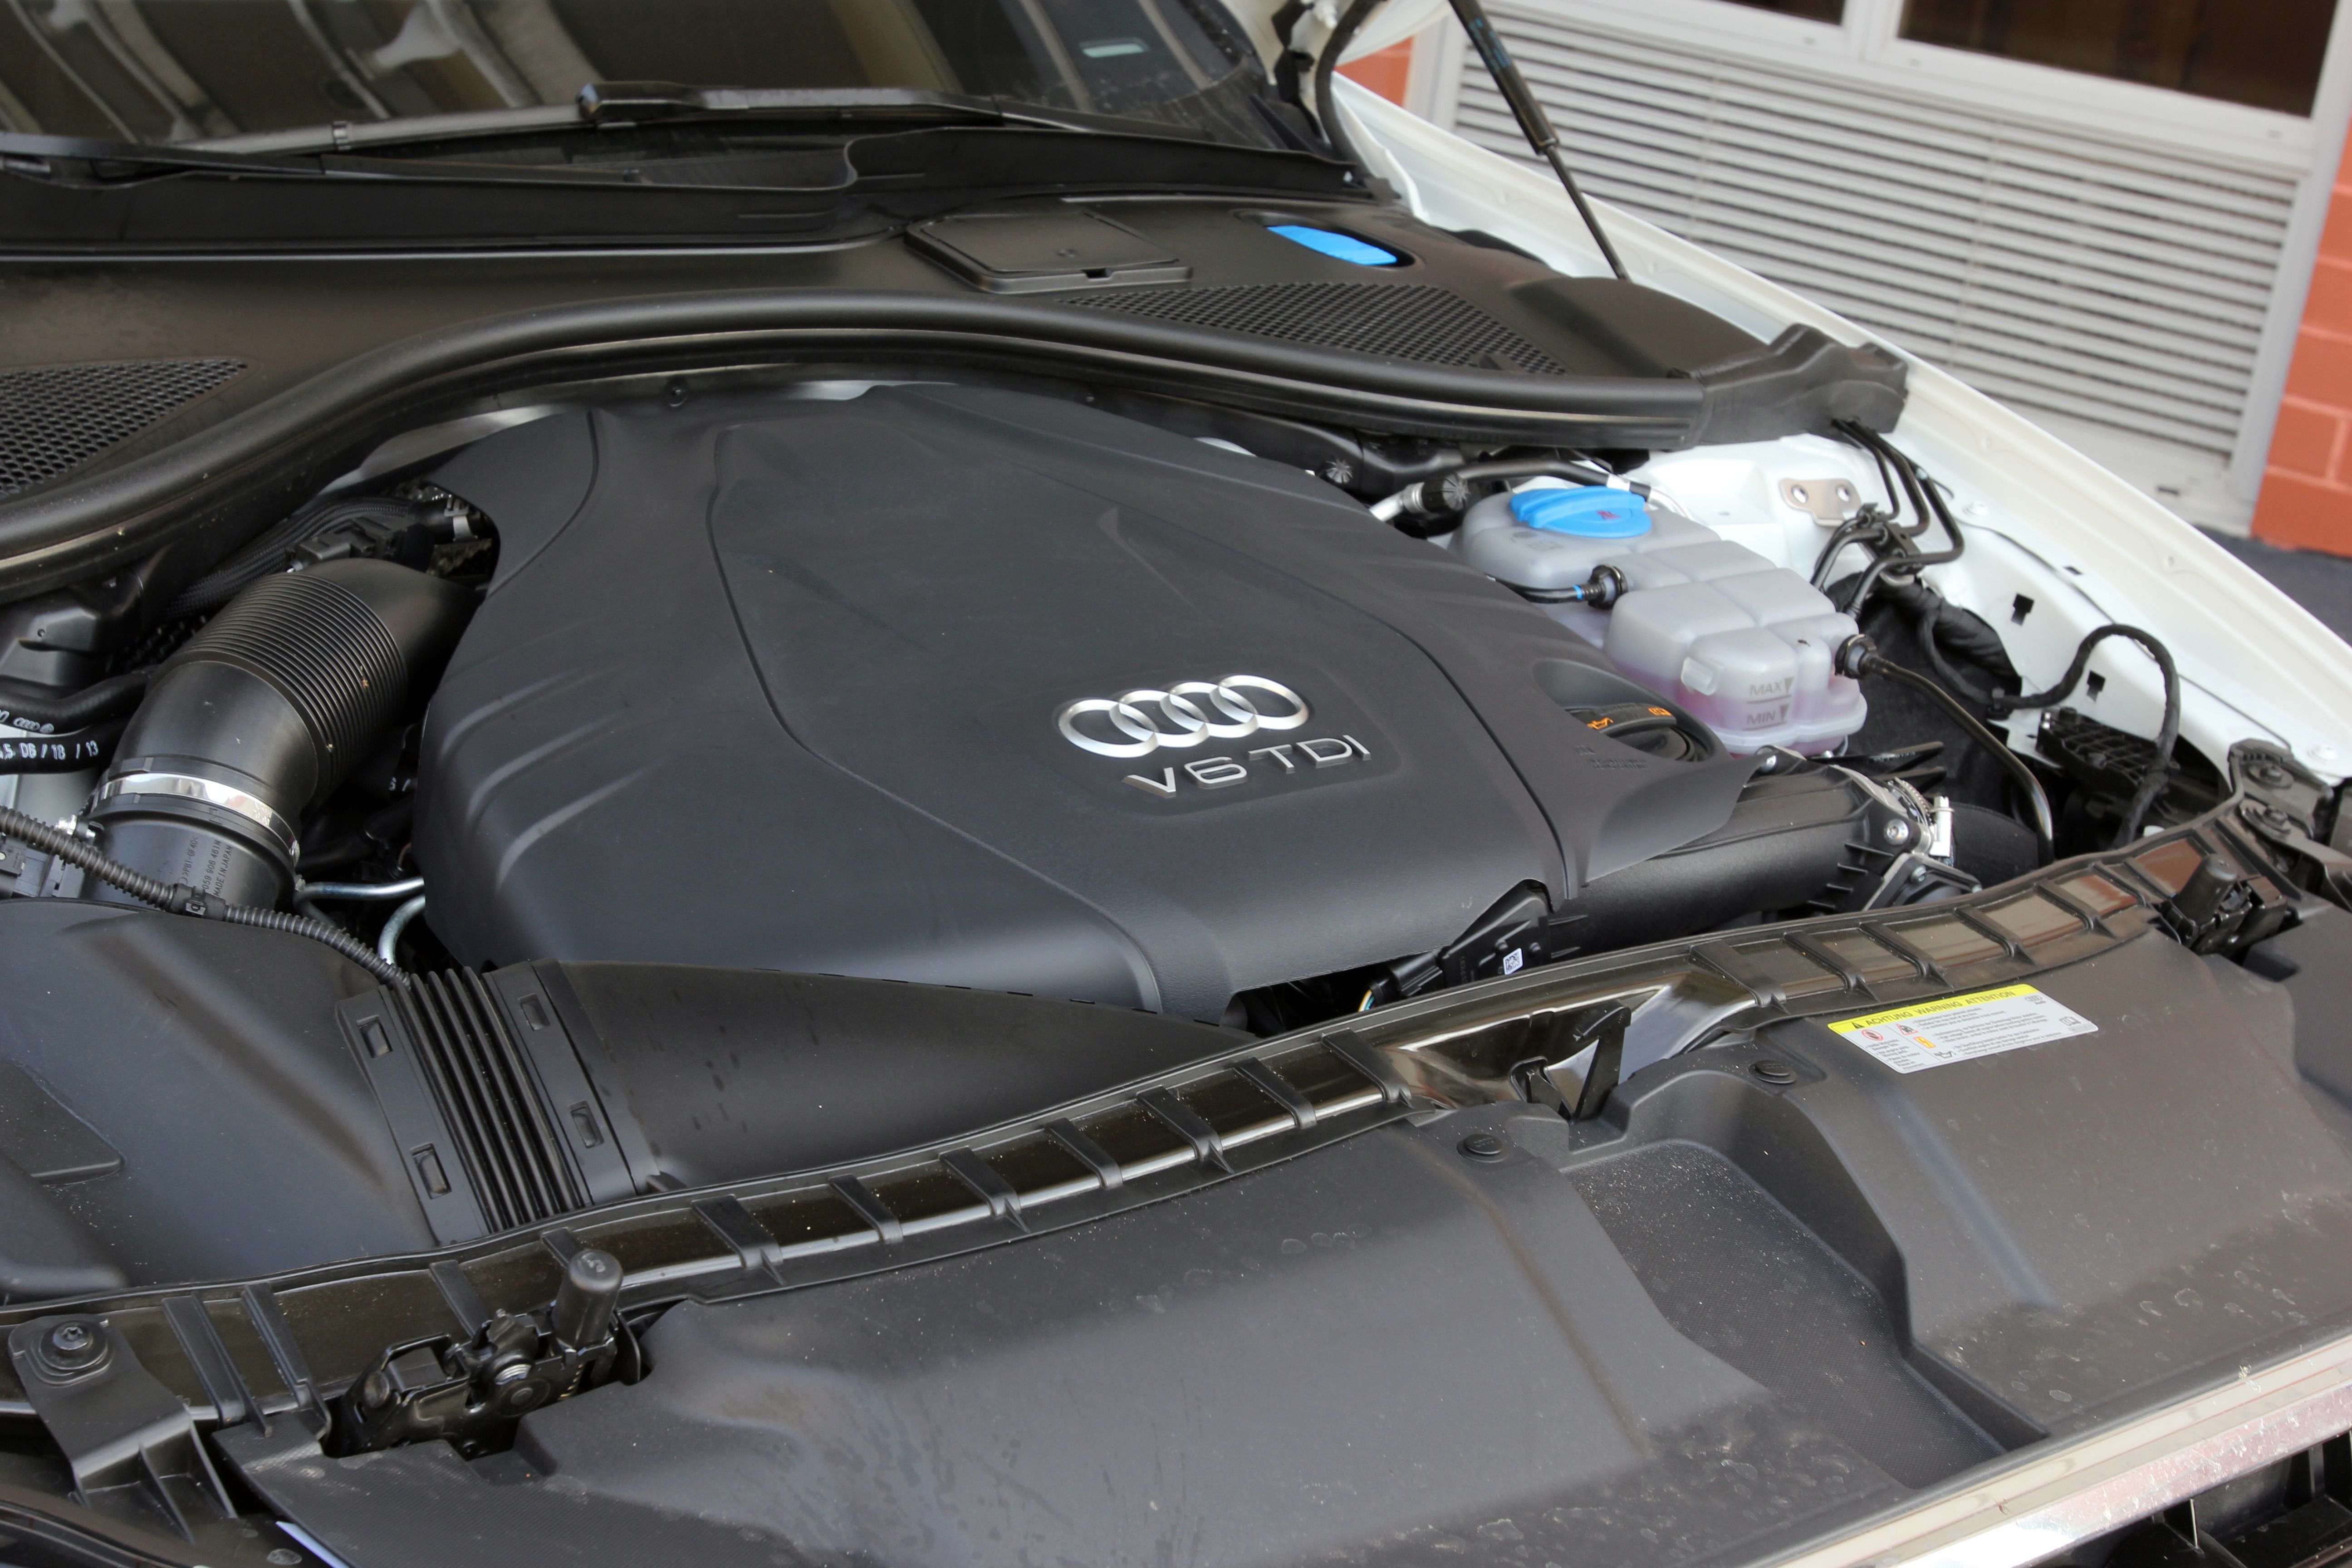 2014 Audi A6 TDI - Driven